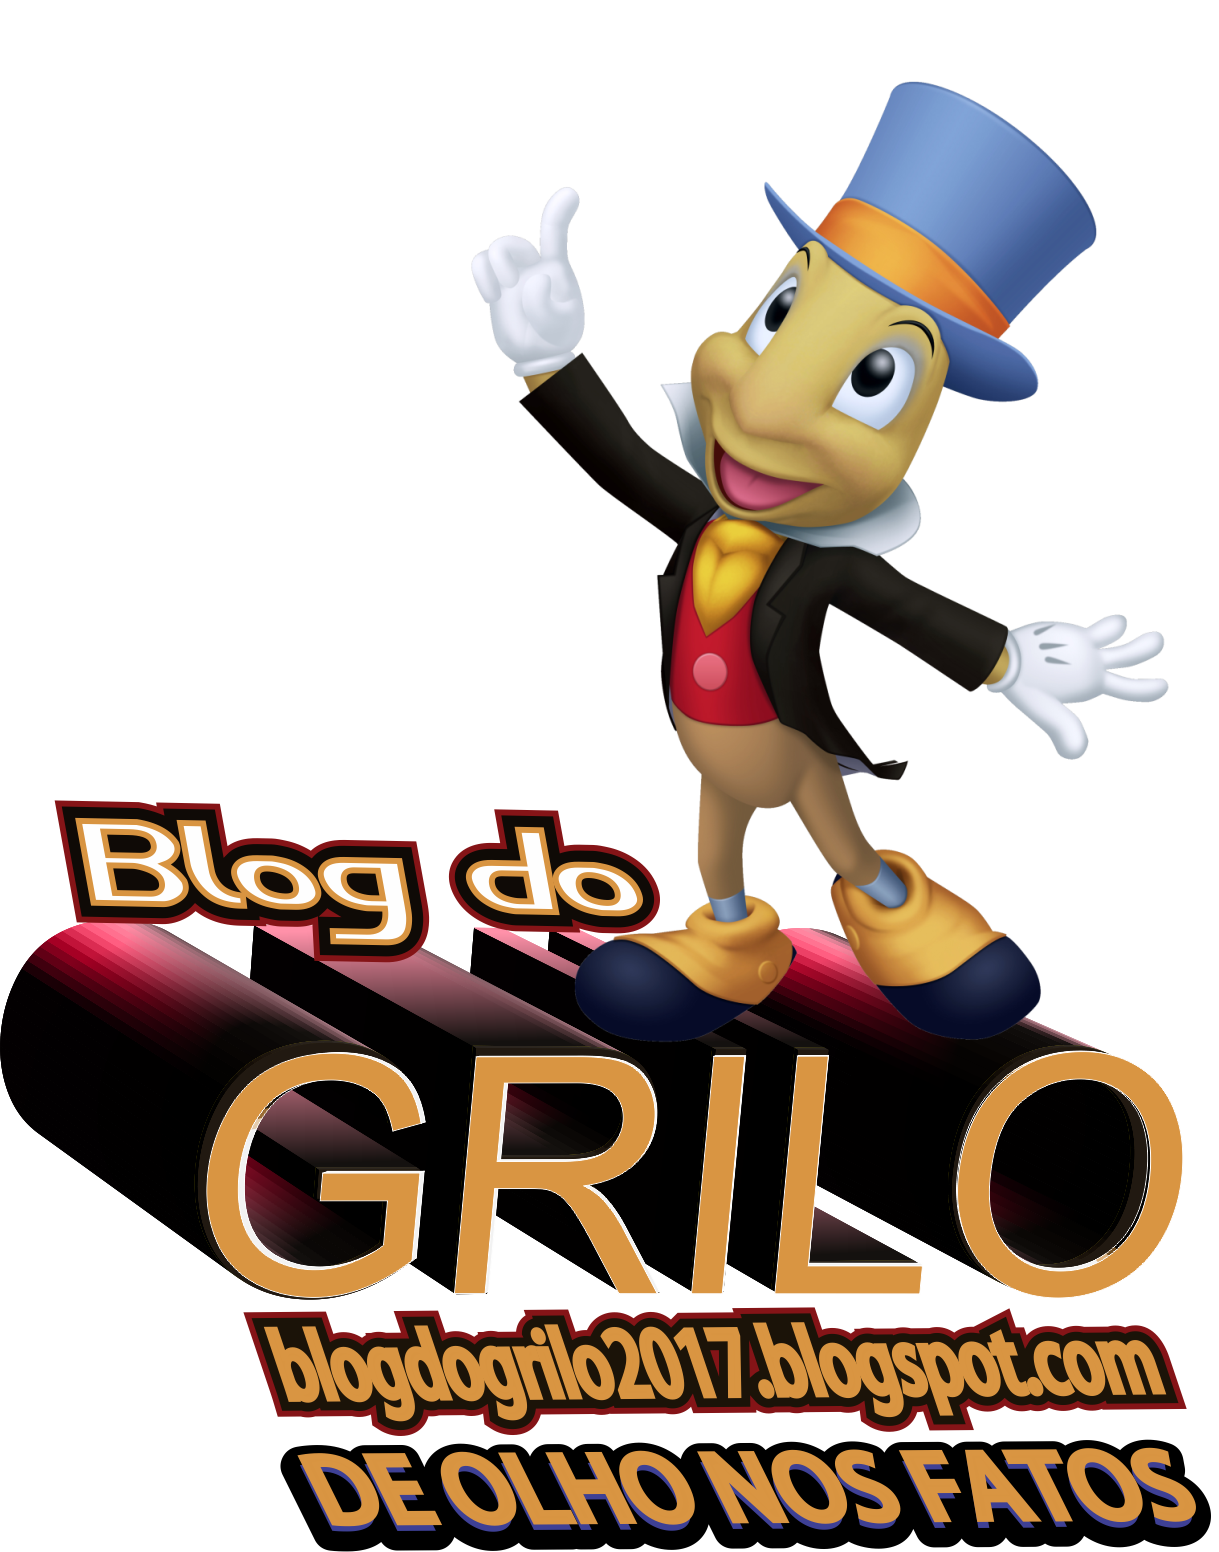 Blog do Grilo.com